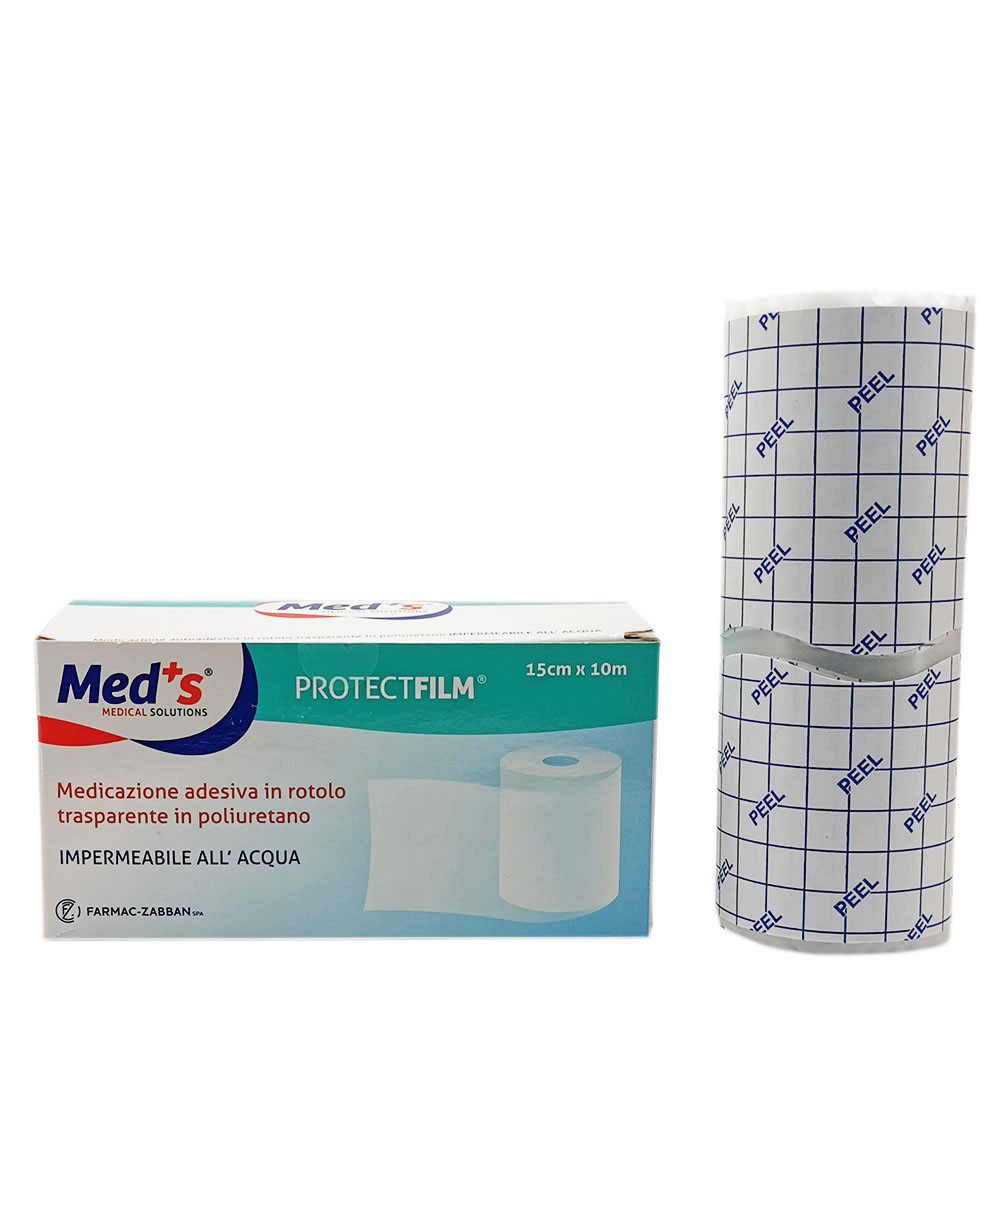 Protect Film Pellicola Adesiva Impermeabile e Trasparente per Medicazioni in Rotolo da 10 metri x 15 cm